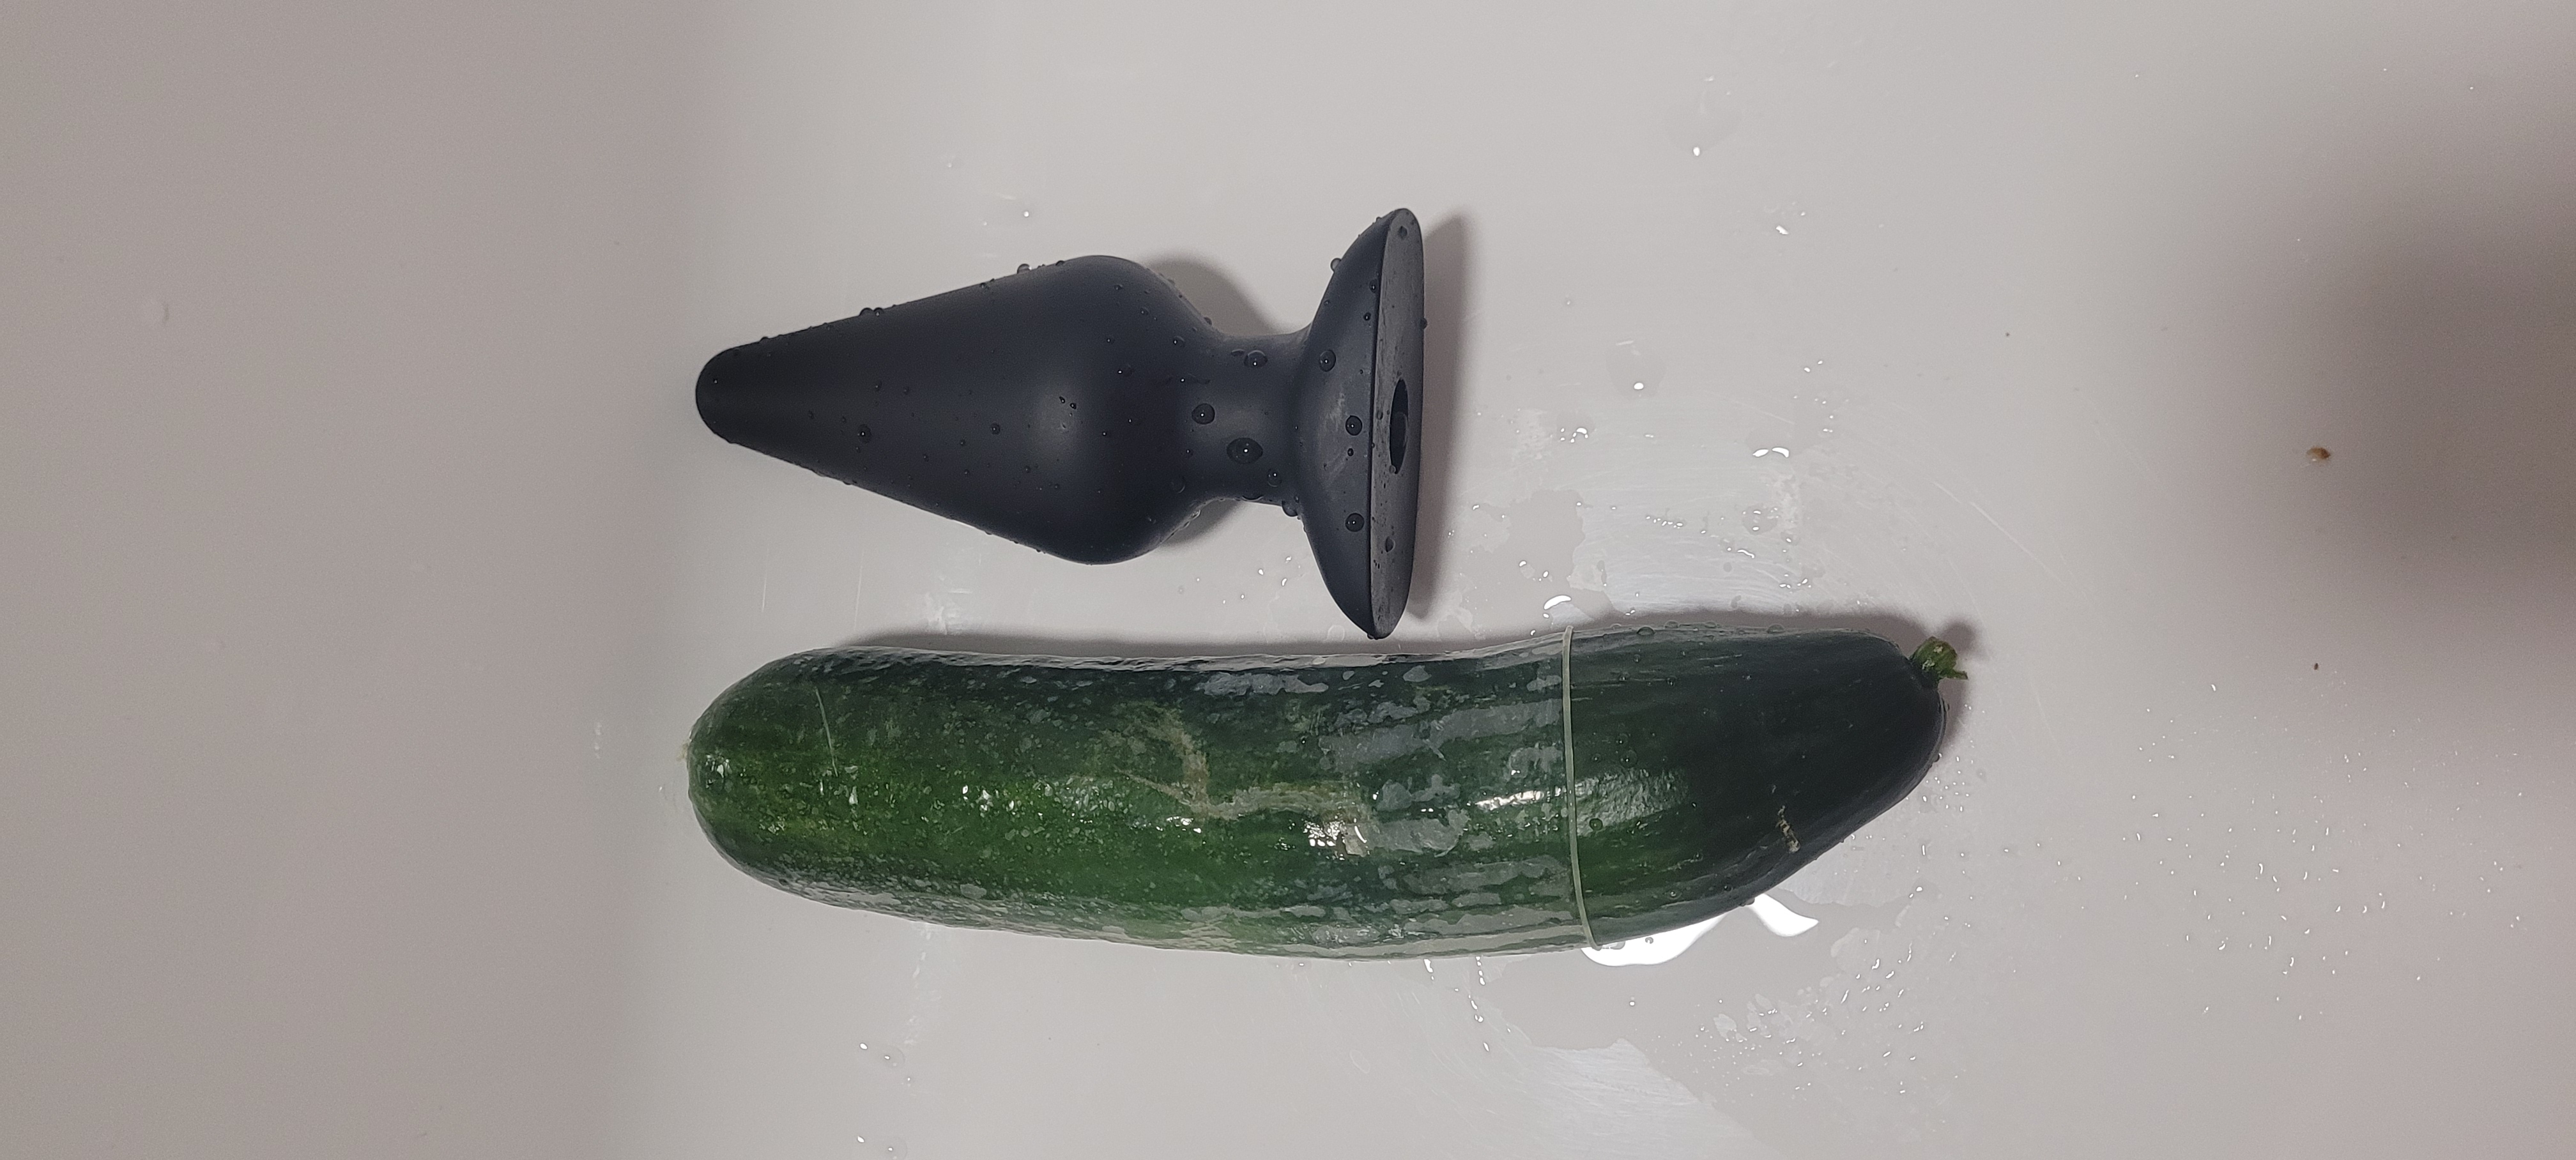 Cucumber Fucking makes me cum